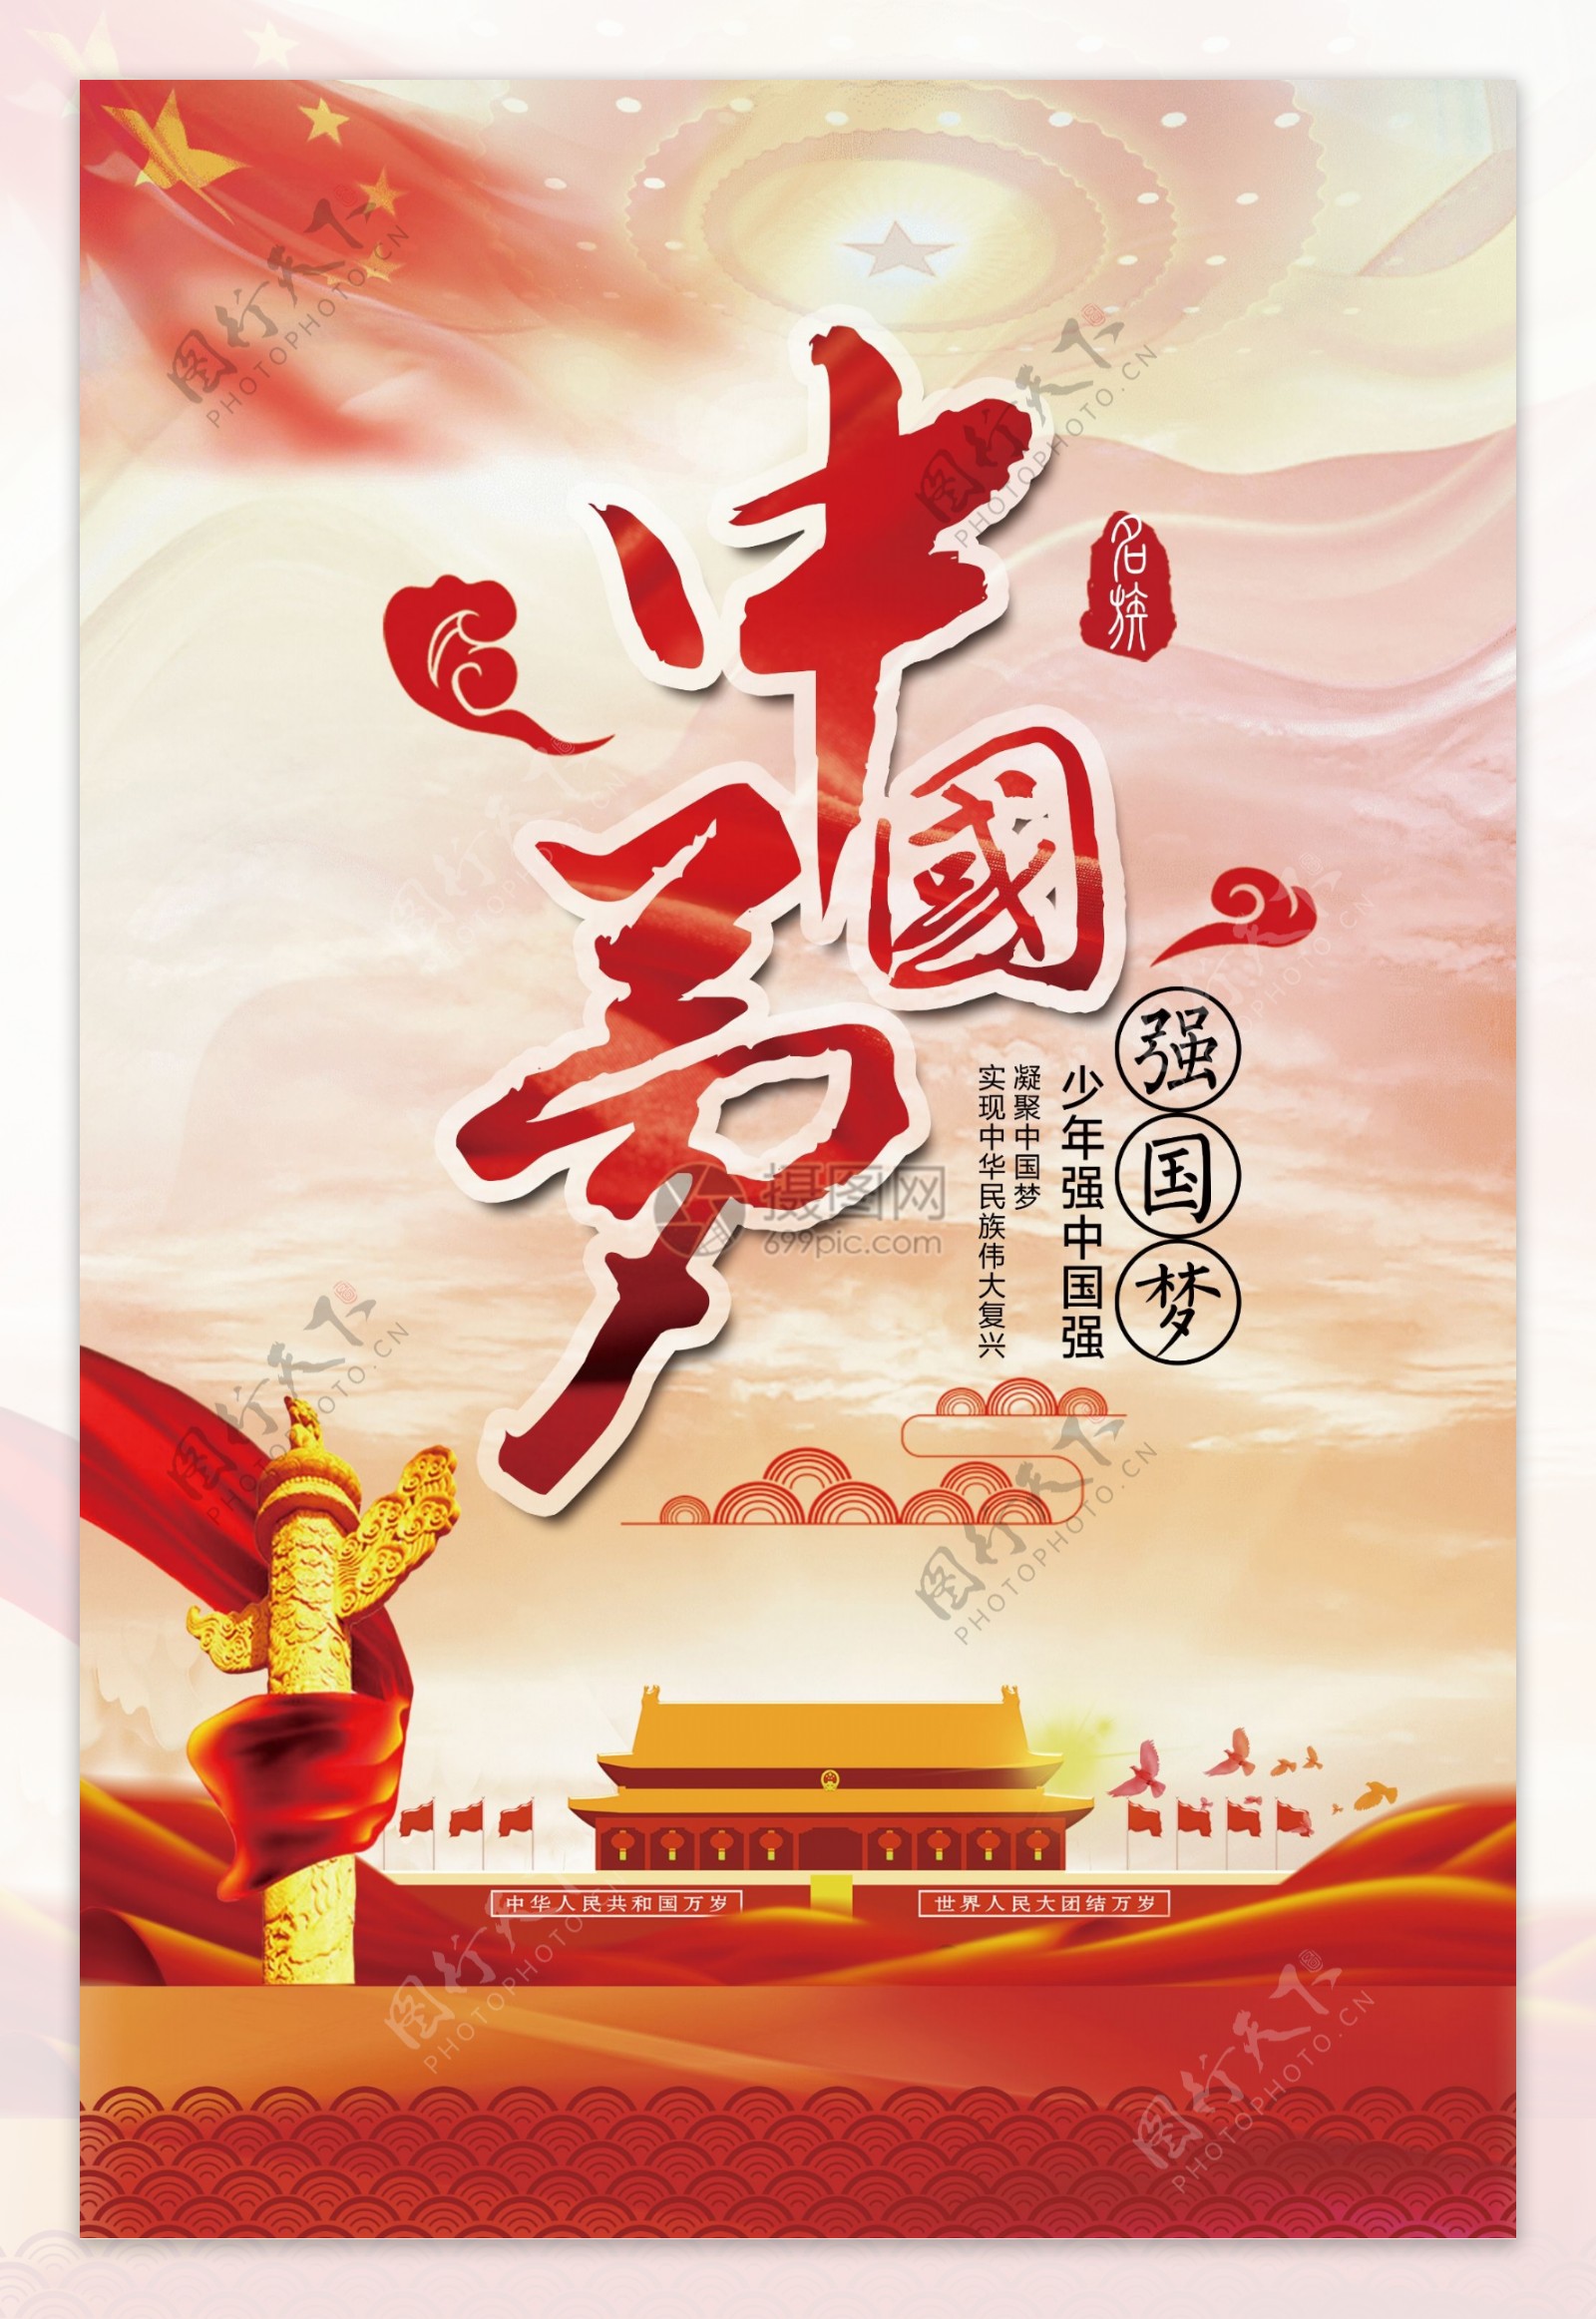 党建中国梦海报设计